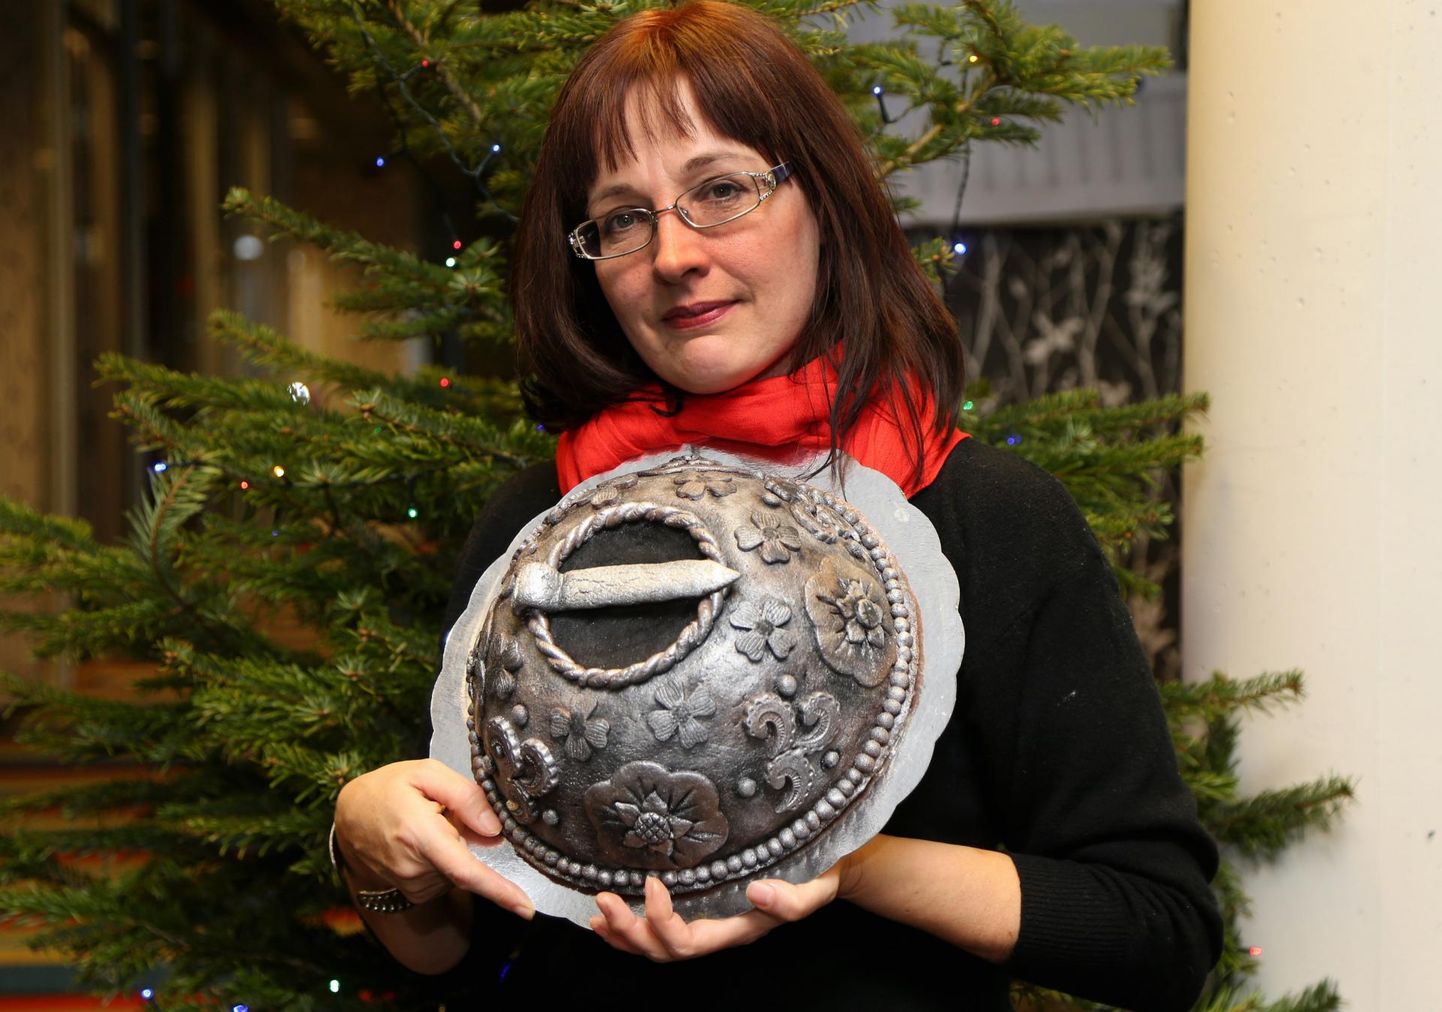 Möödunud aastal võitis Tartu Postimehe piparkoogivõistluse Lilli-Mai Mihhailova piparkoogitainast sõlega. Sille Annuk